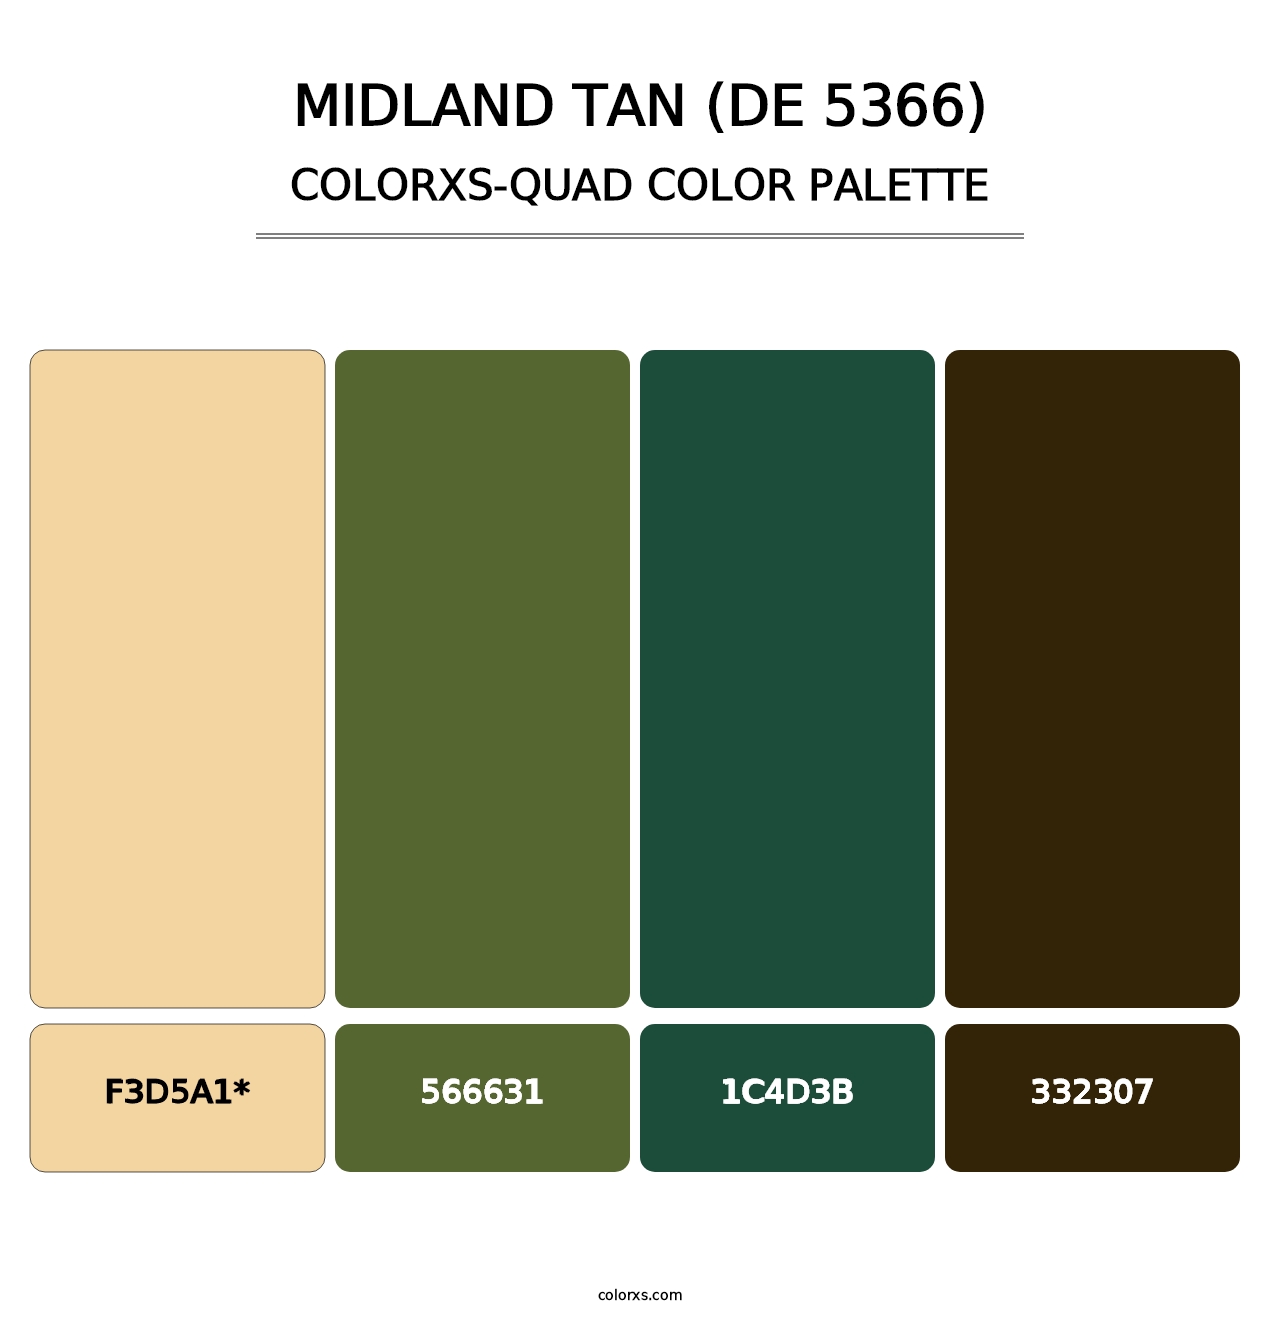 Midland Tan (DE 5366) - Colorxs Quad Palette